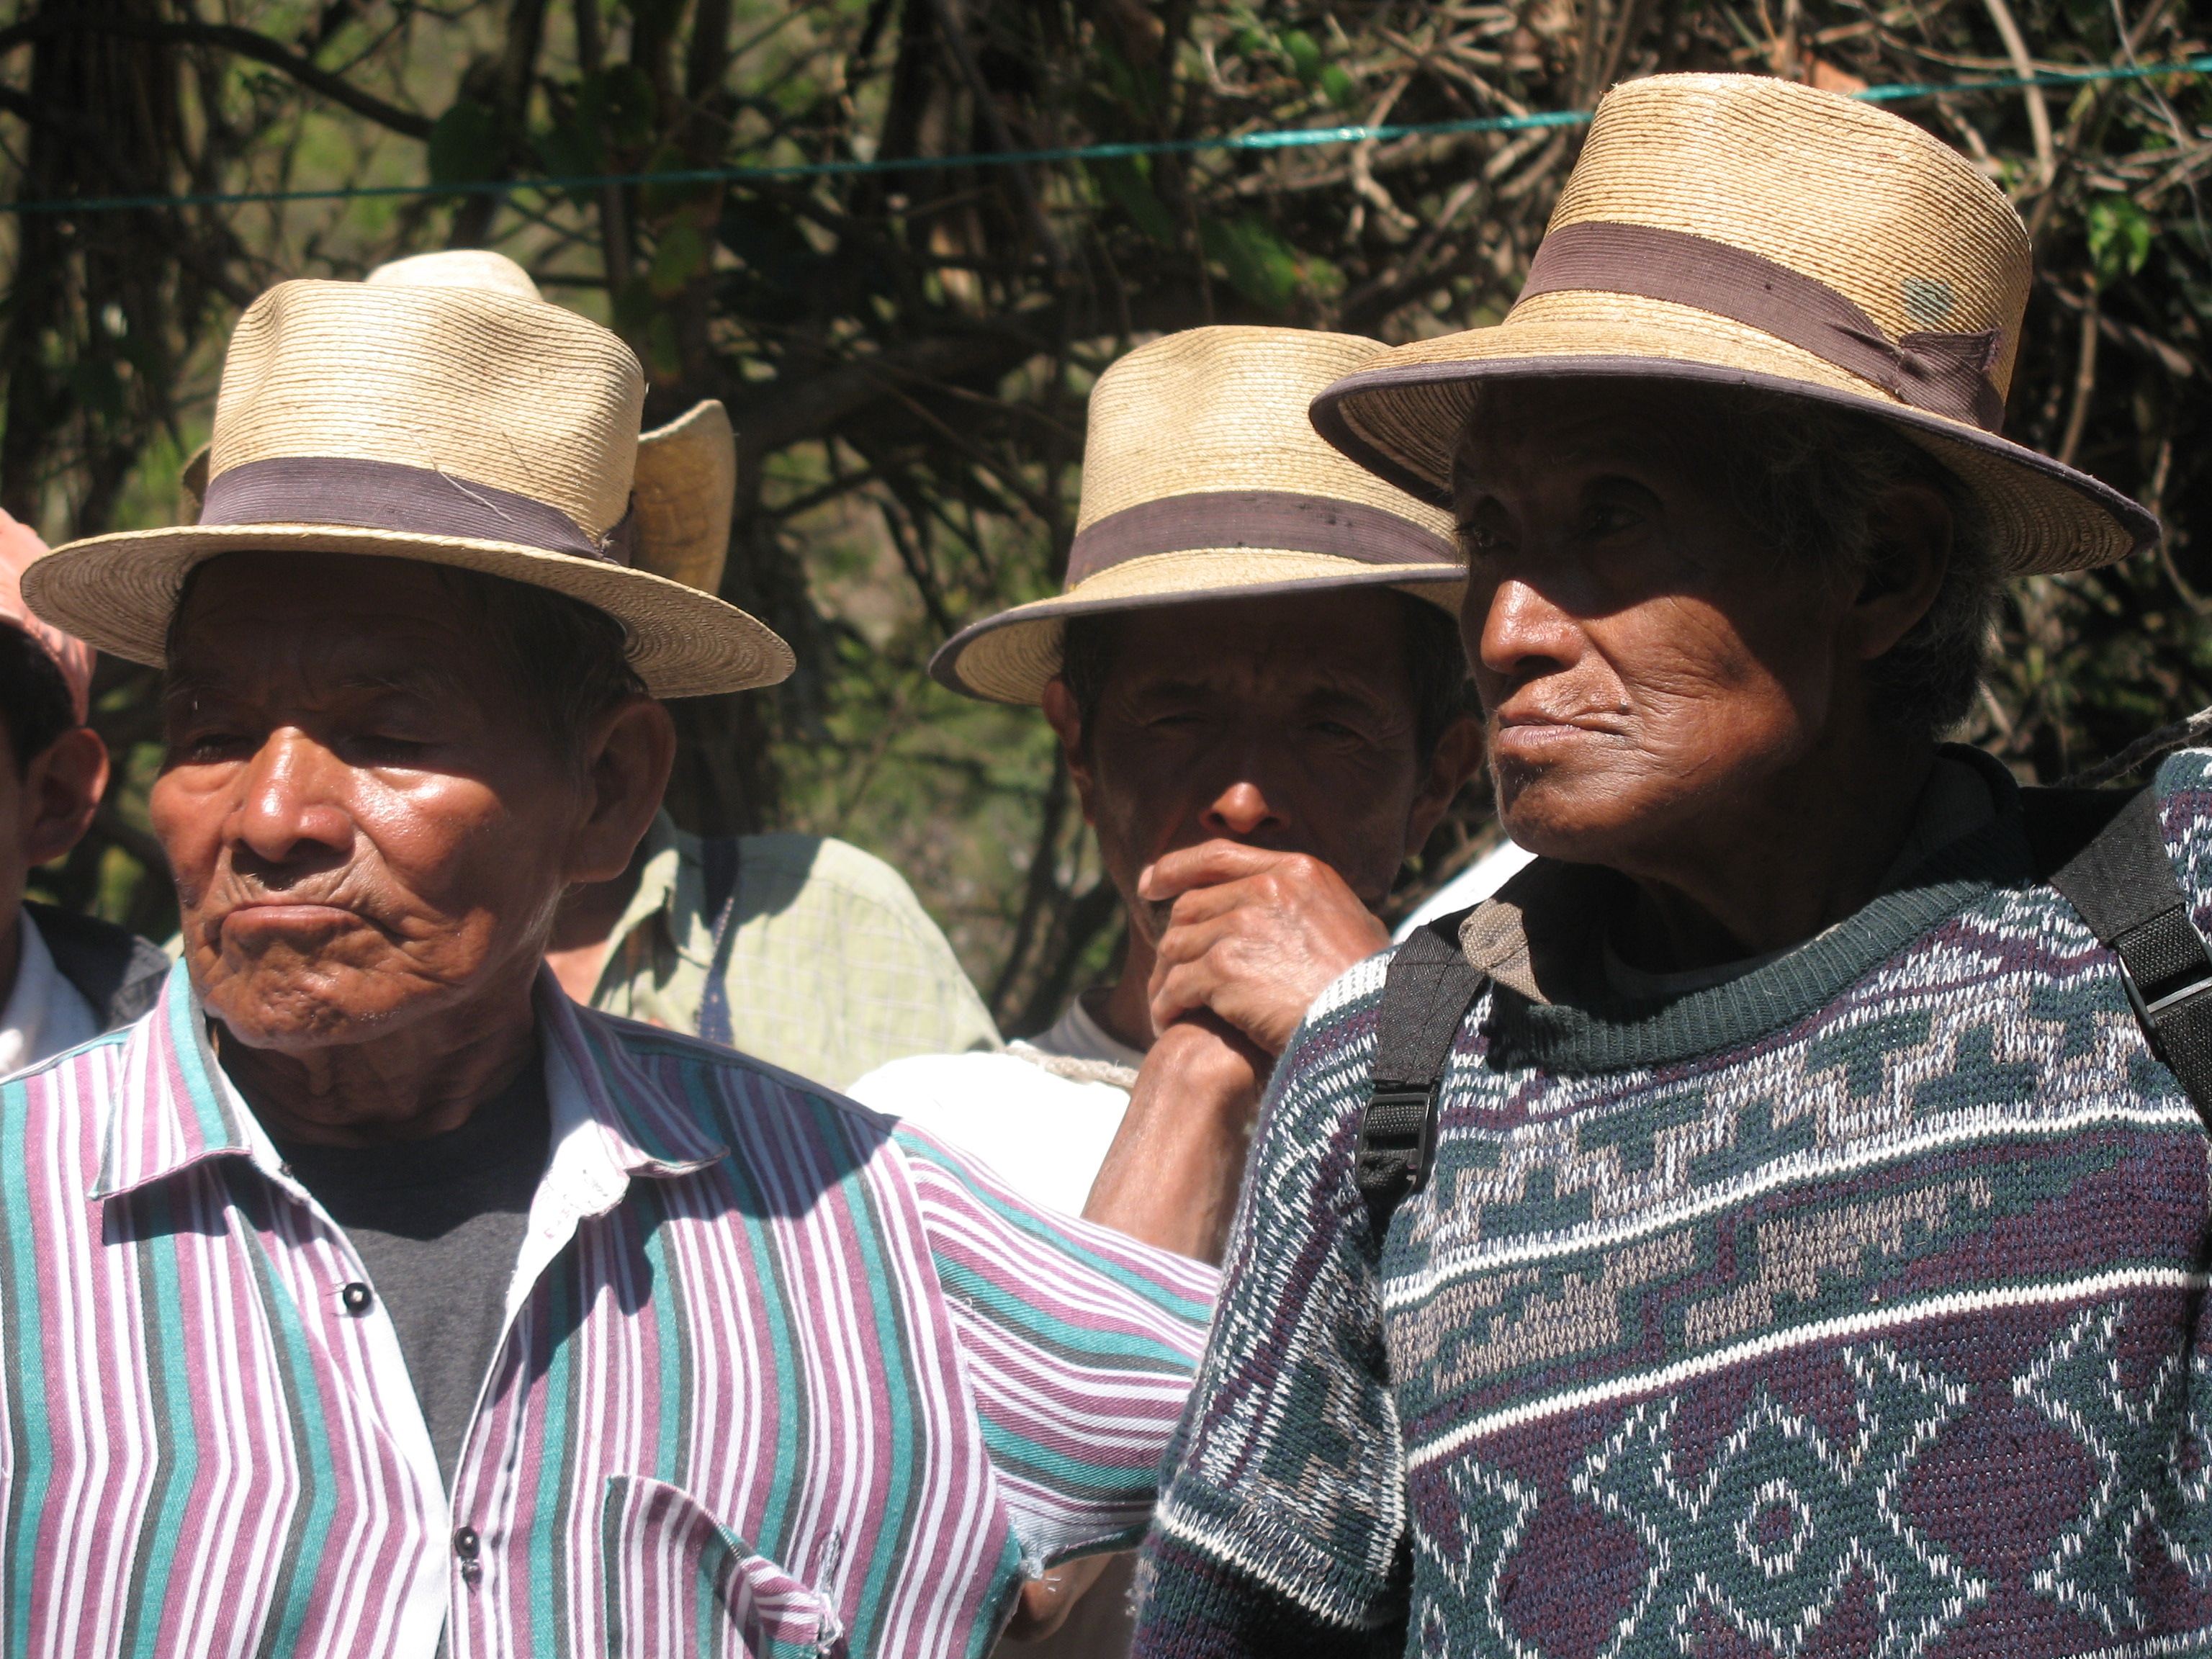 Zum Internationalen Tag der indigenen Völker am 9. August 2013:  Abbau von Ressourcen bedroht indigene Völker